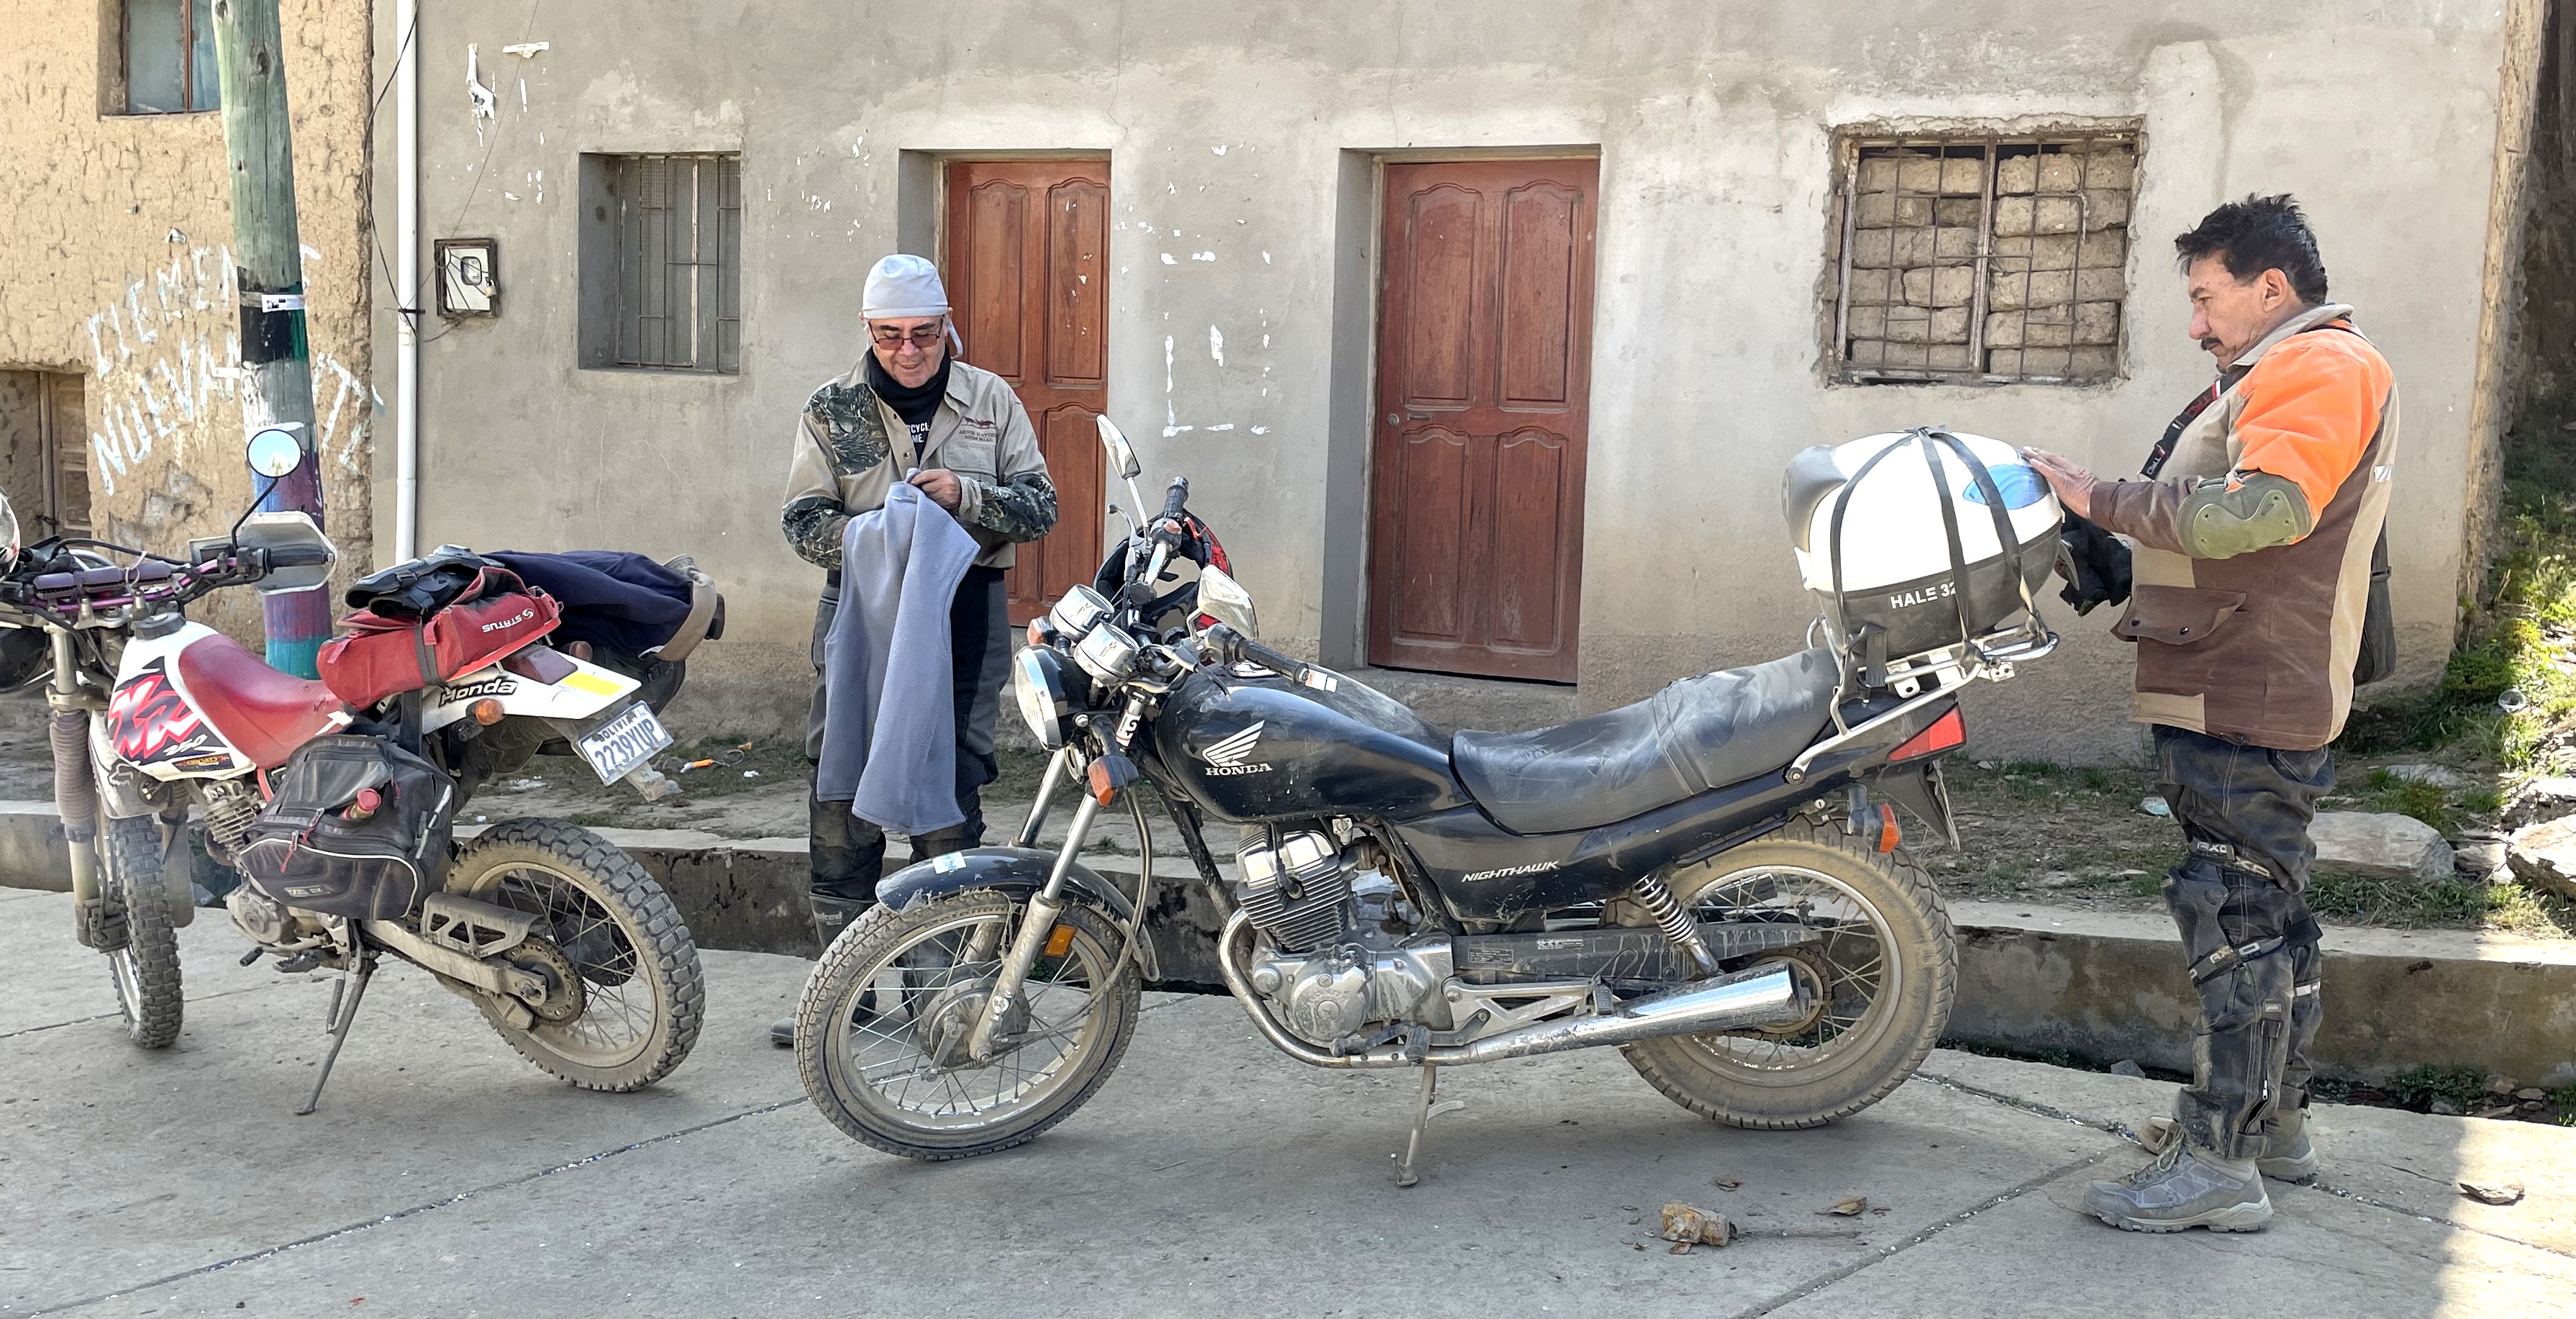 Ruta Palca - Irupana con los paseanderos Chalo y Killy alistando sus motos en Lambate.